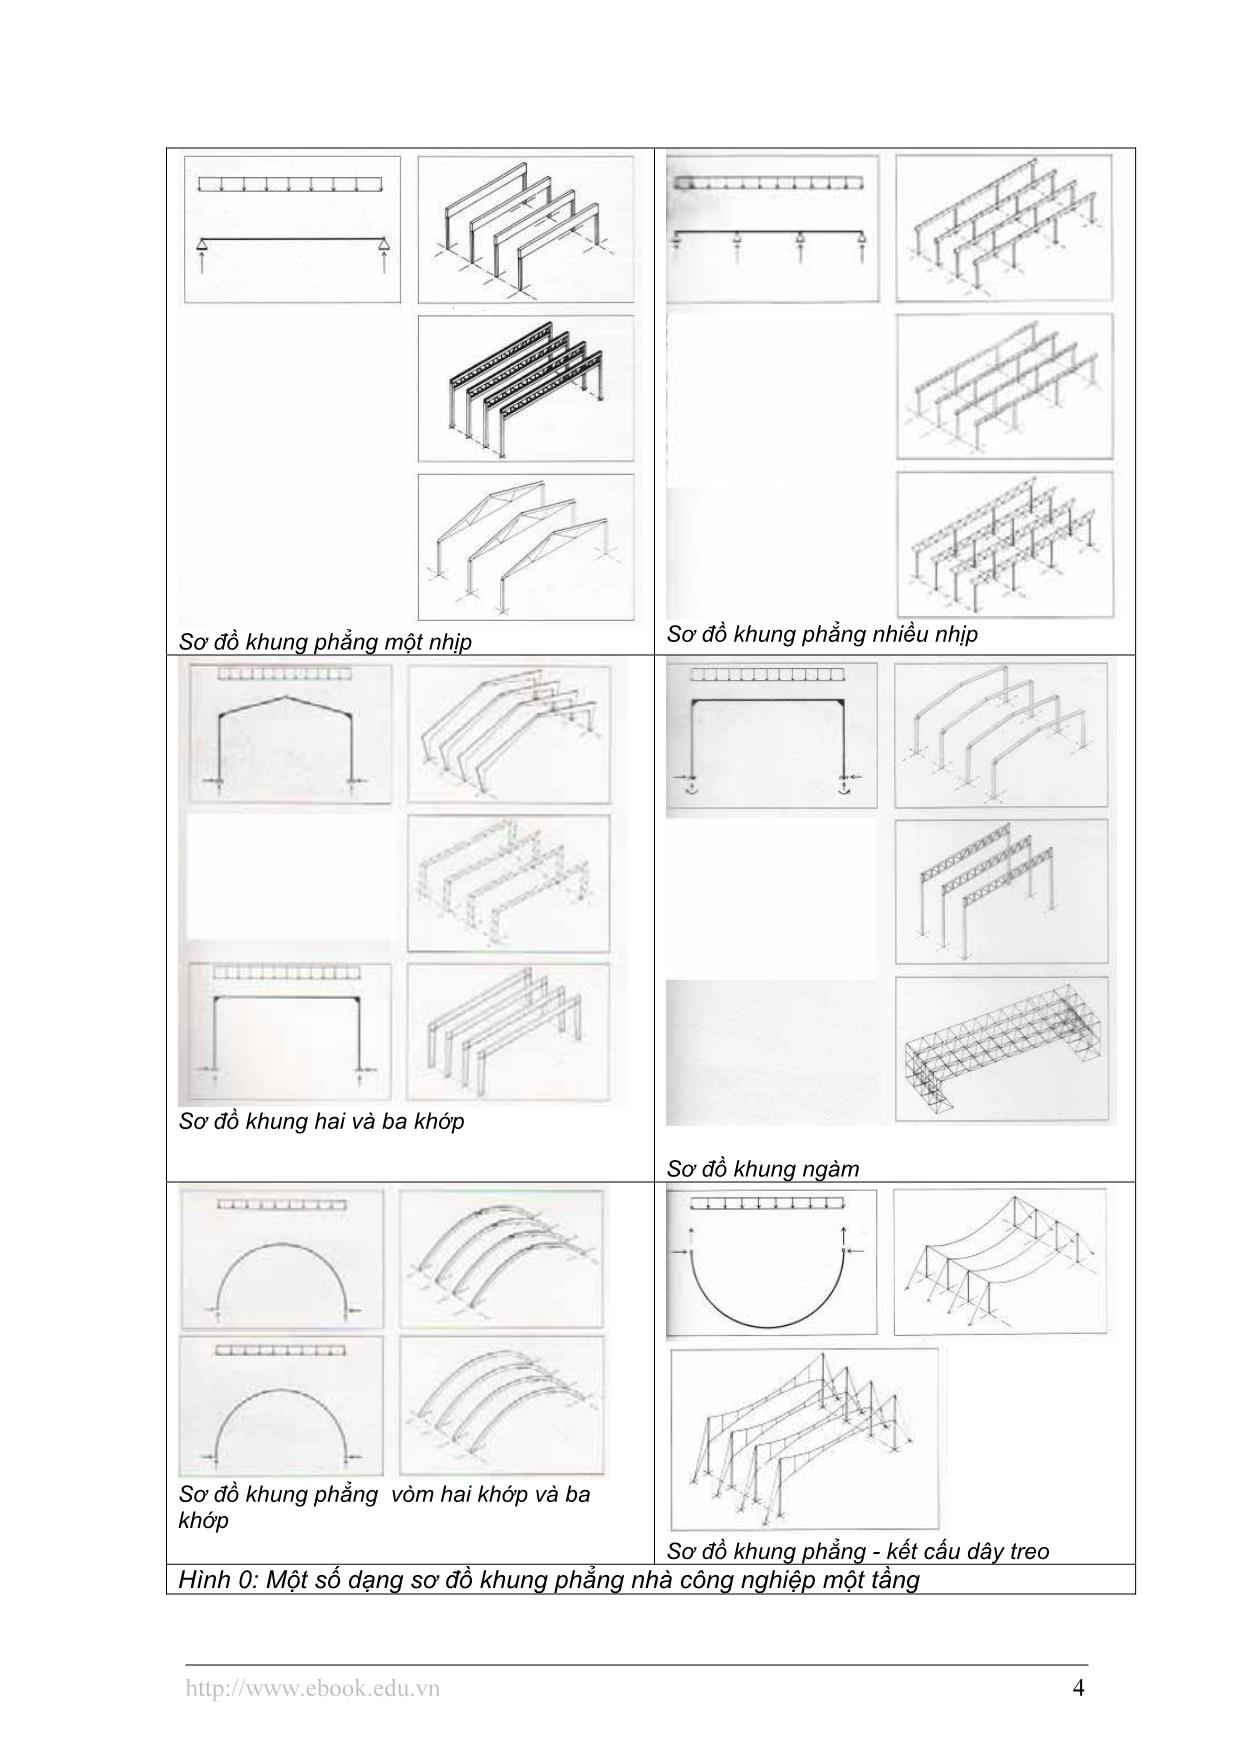 Những vấn đề chung thiết kế cấu tạo kiến trúc nhà công nghiệp – thiết kế cấu tạo kiến trúc kết cấu chịu lực trang 4